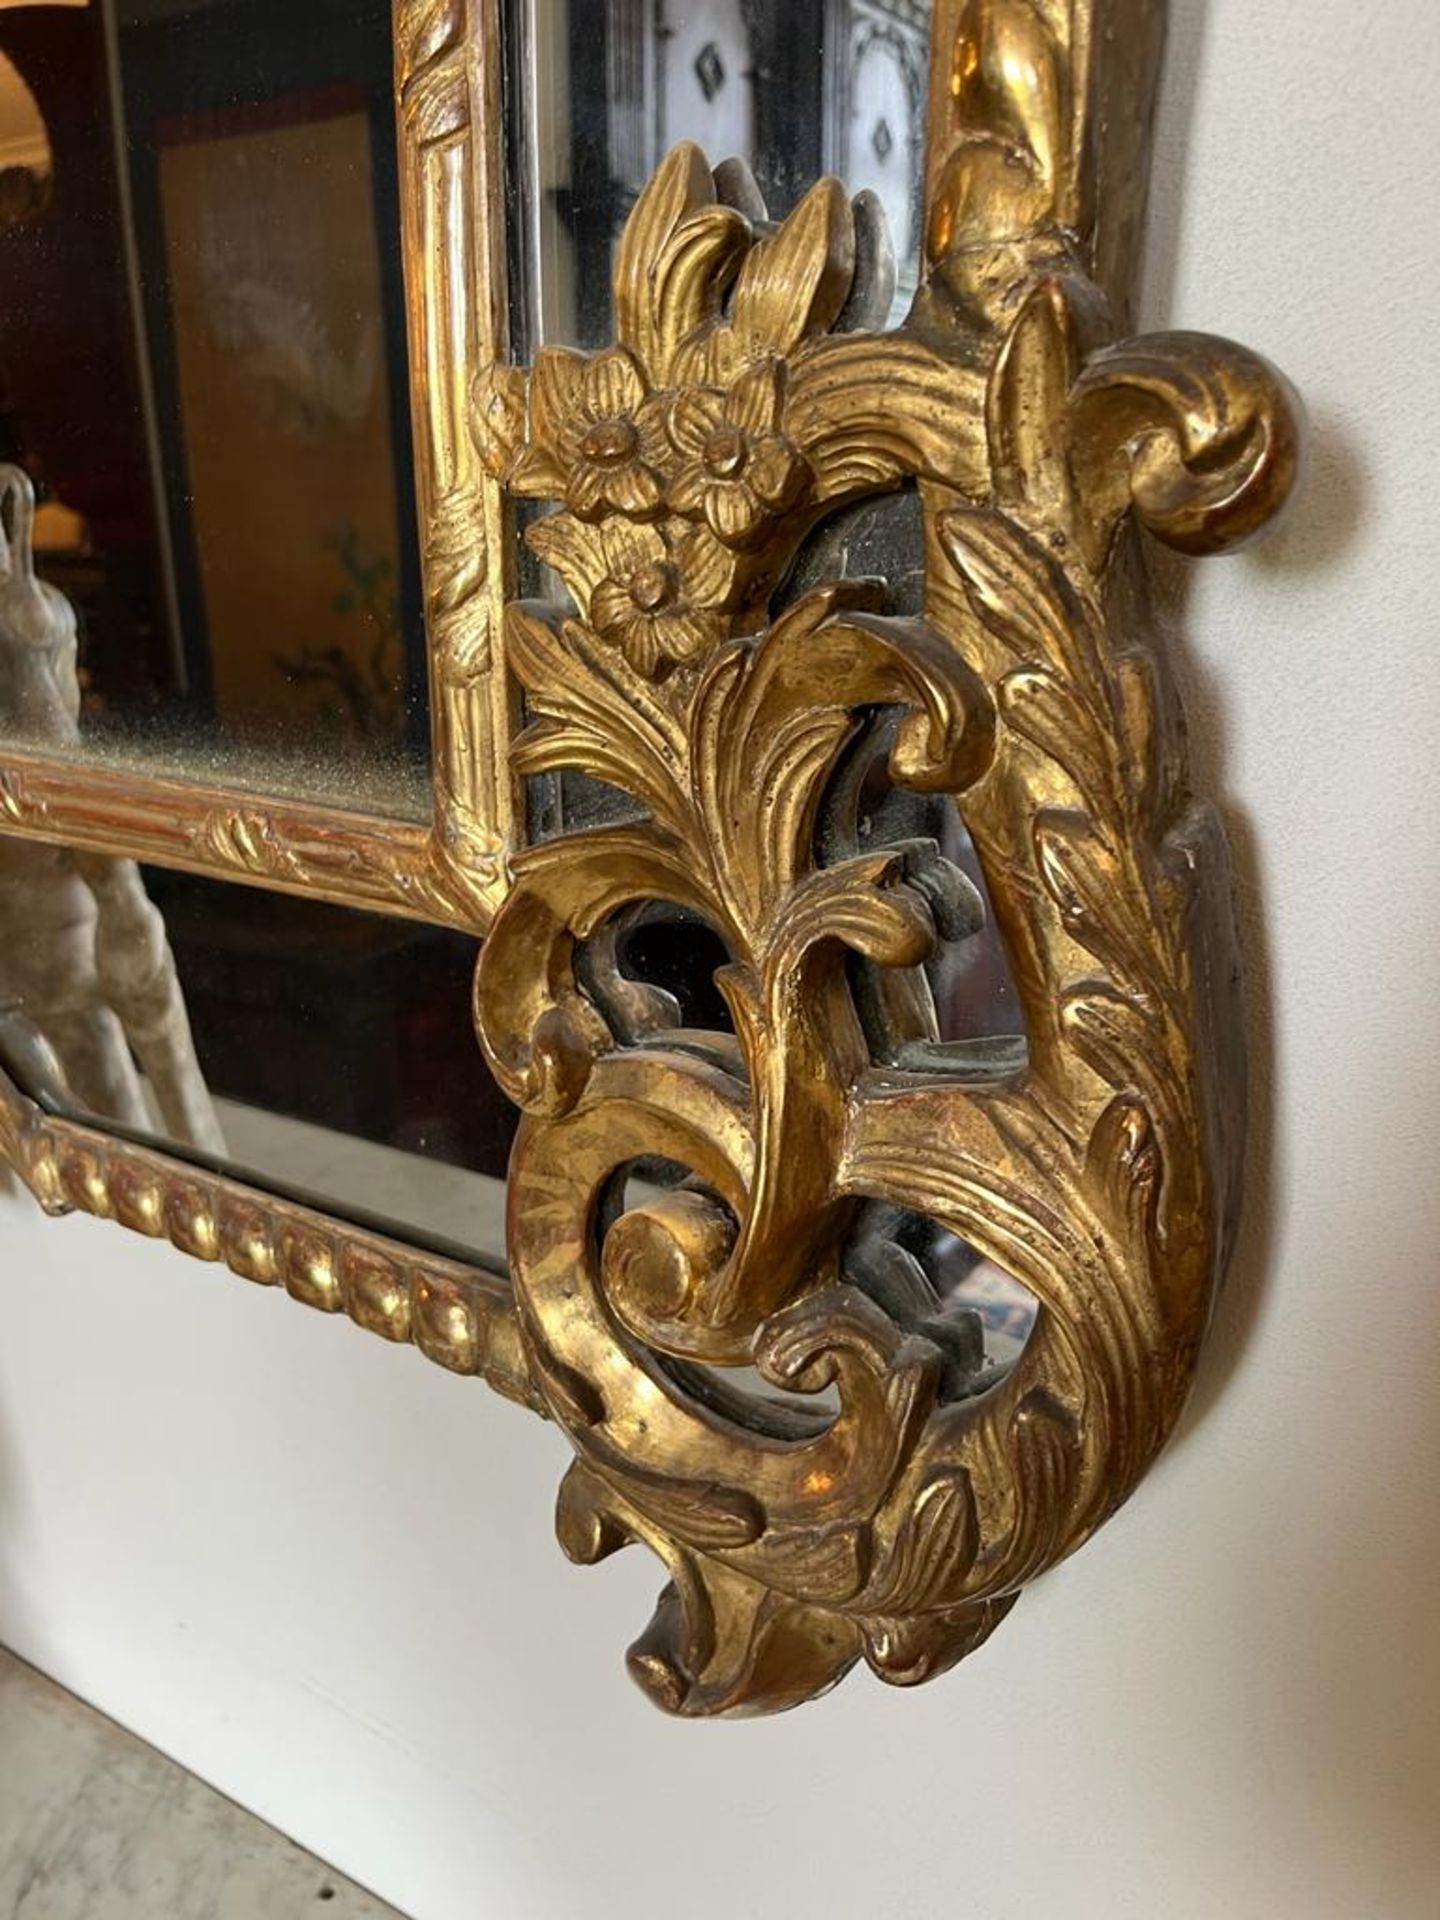 Grand miroir en bois doré à parcloses et fronton Décor d'aigles, de rinceaux feuillagés et fleuris - Image 2 of 4